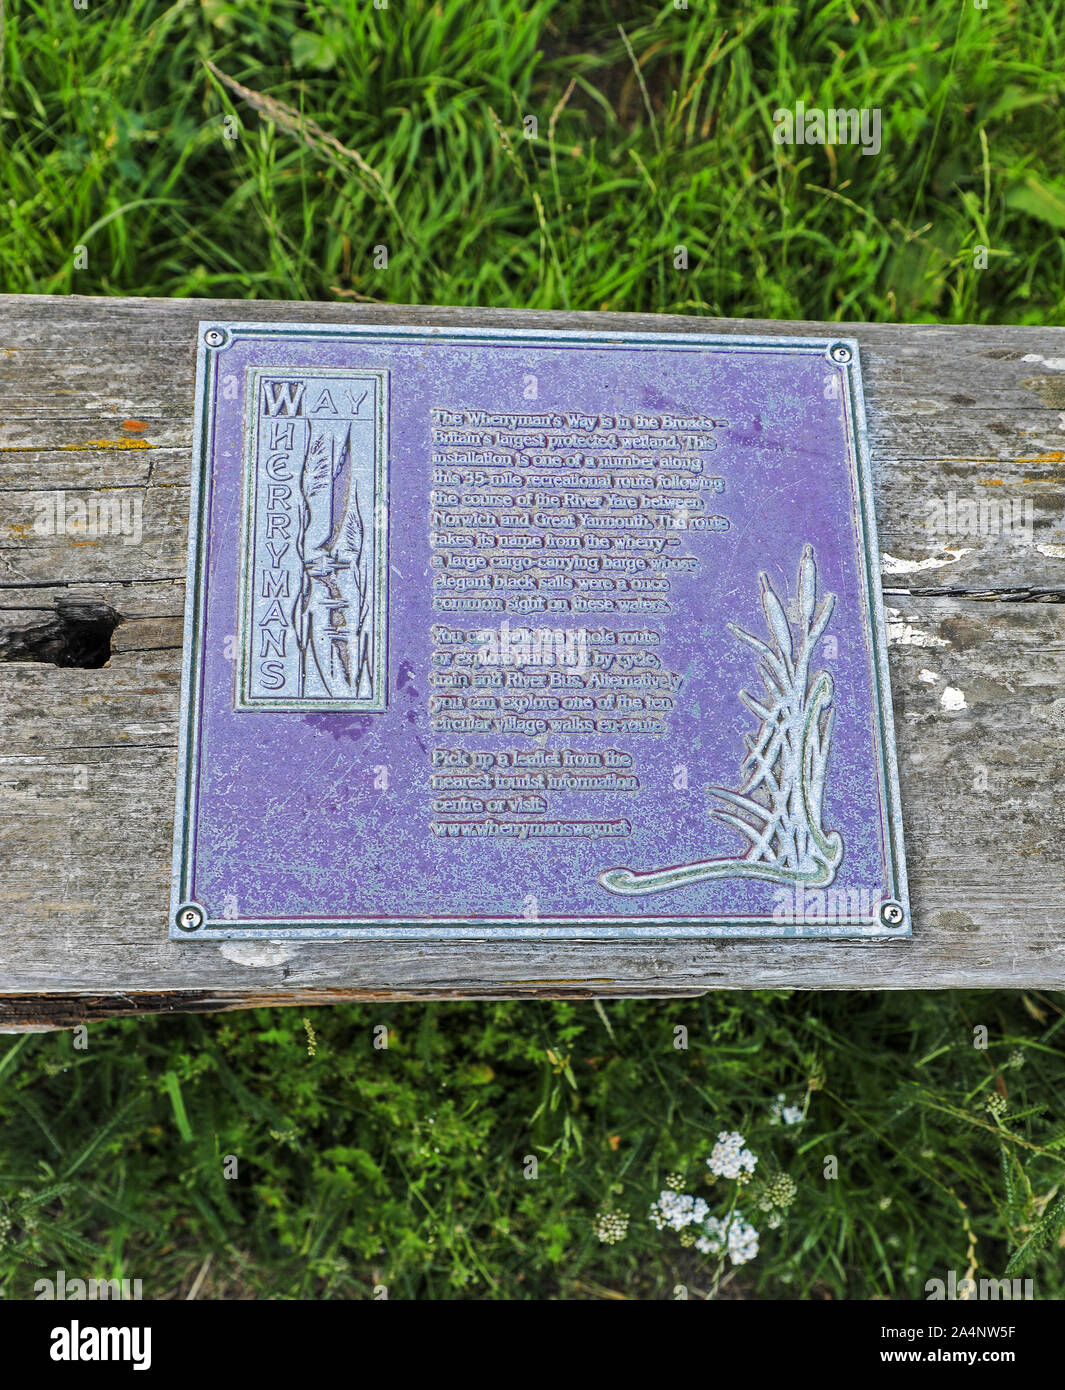 Eine Informationstafel für Wandern des Wherryman zwischen Norwich und Great Yarmouth, Norfolk Broards, Norfolk, England, UK läuft Stockfoto